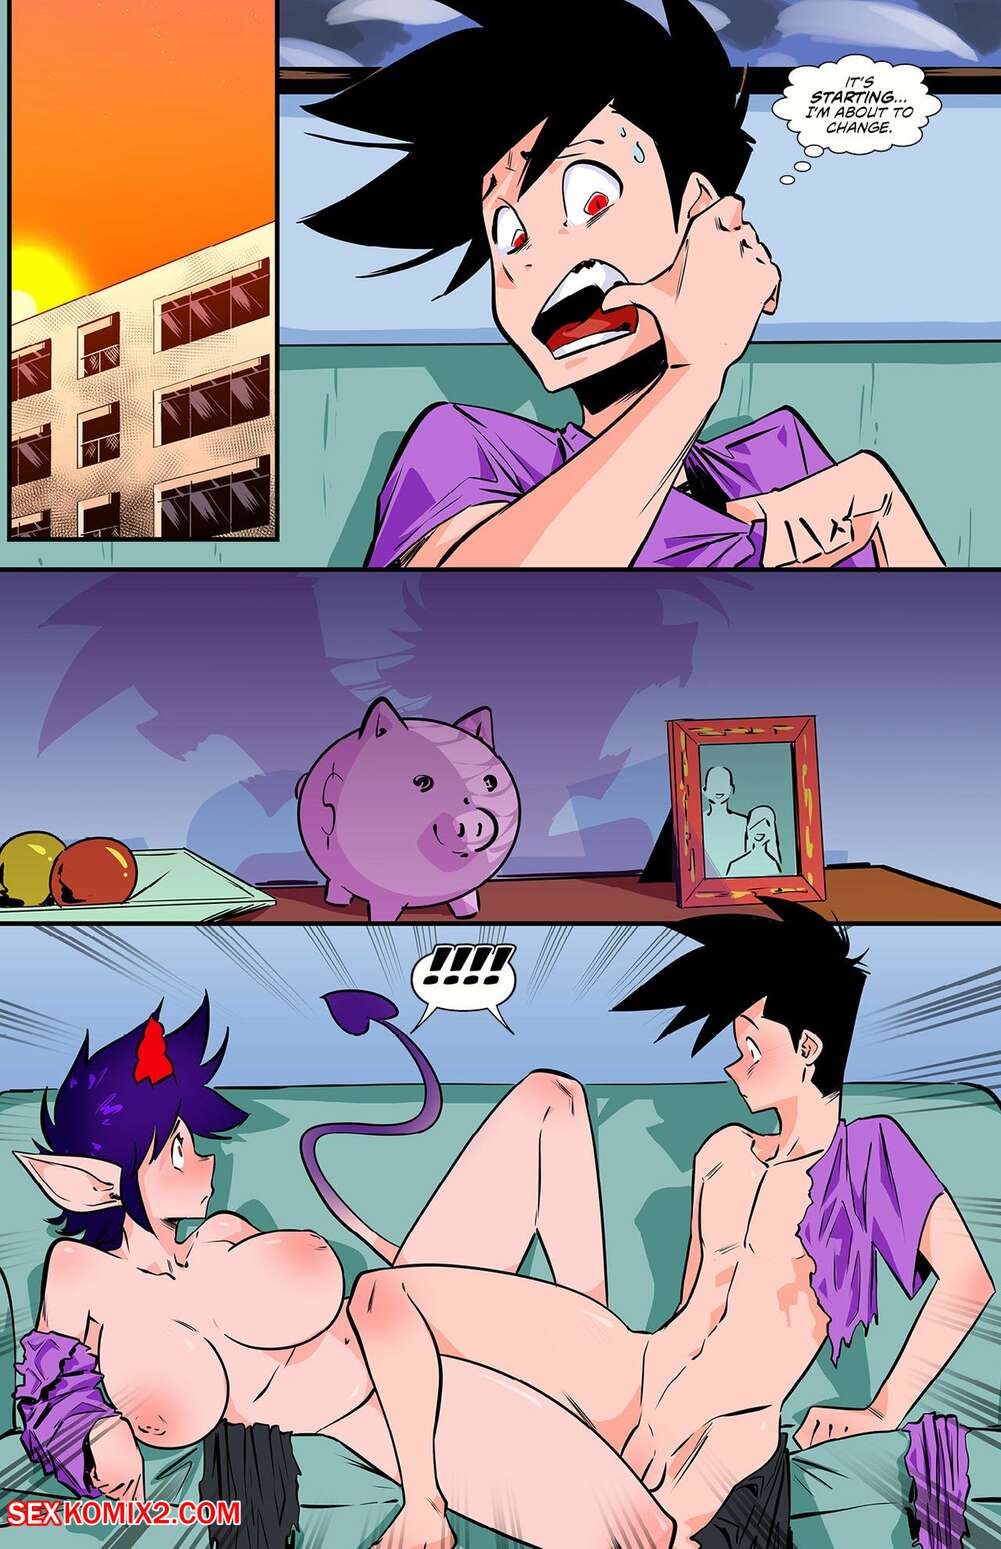 Hot monster girls porn comics